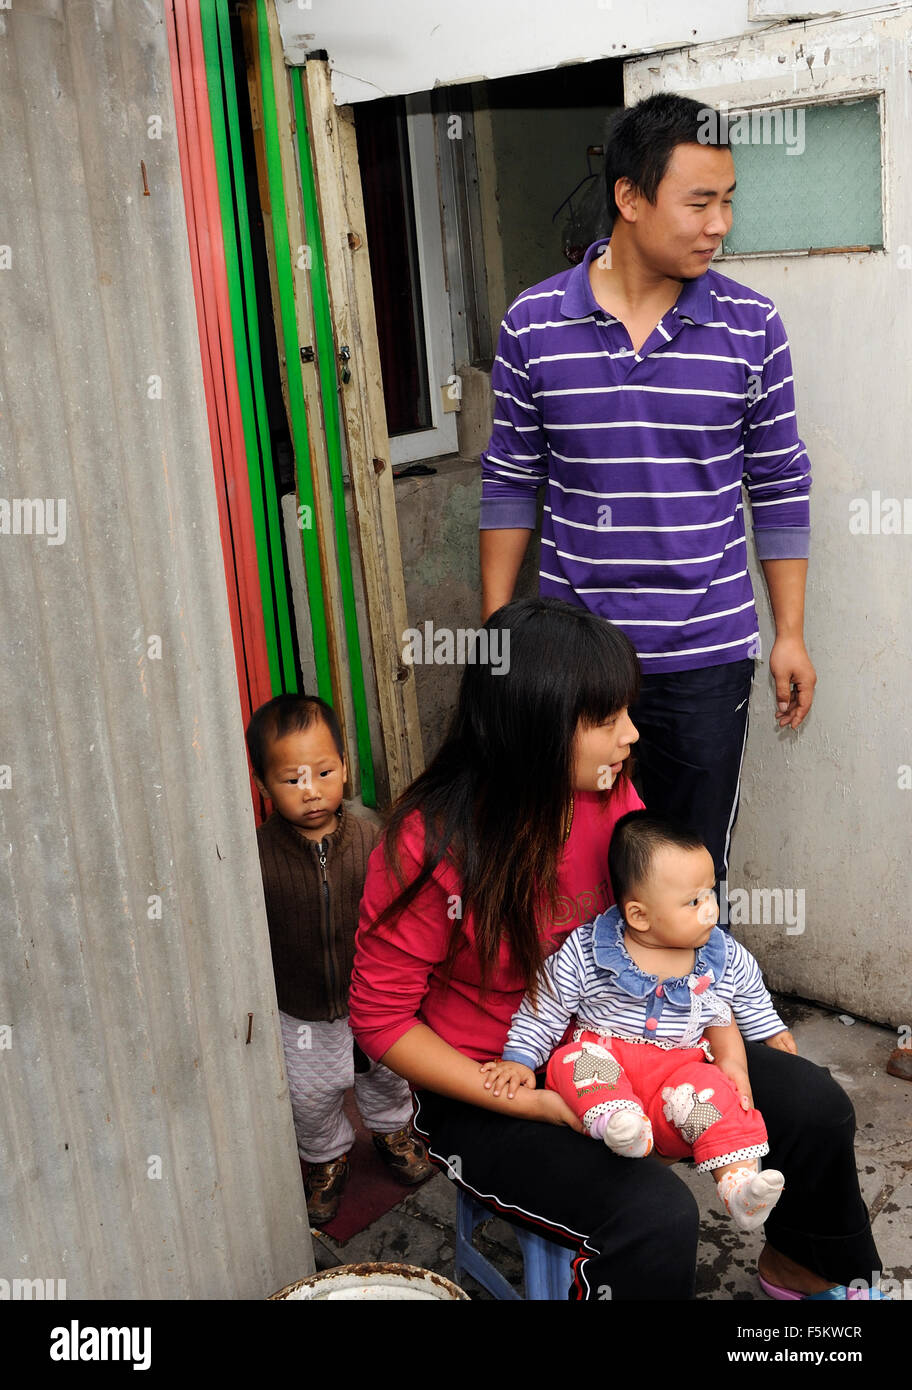 Une famille avec deux enfants à Pékin, en Chine. Banque D'Images